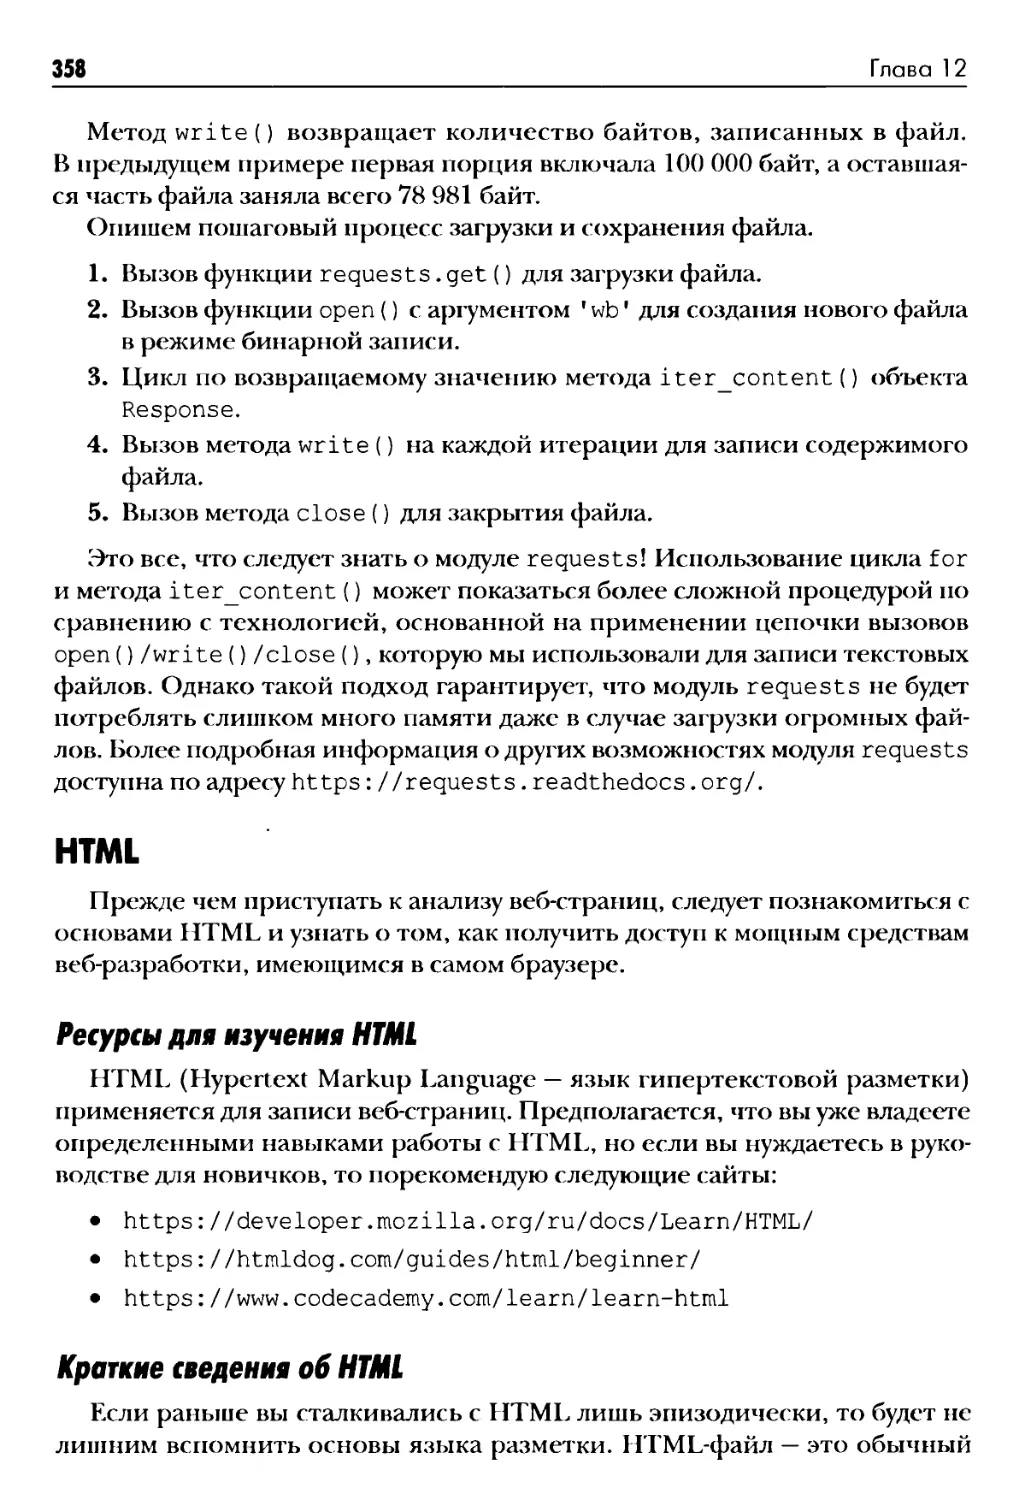 HTML
Краткие сведения об HTML